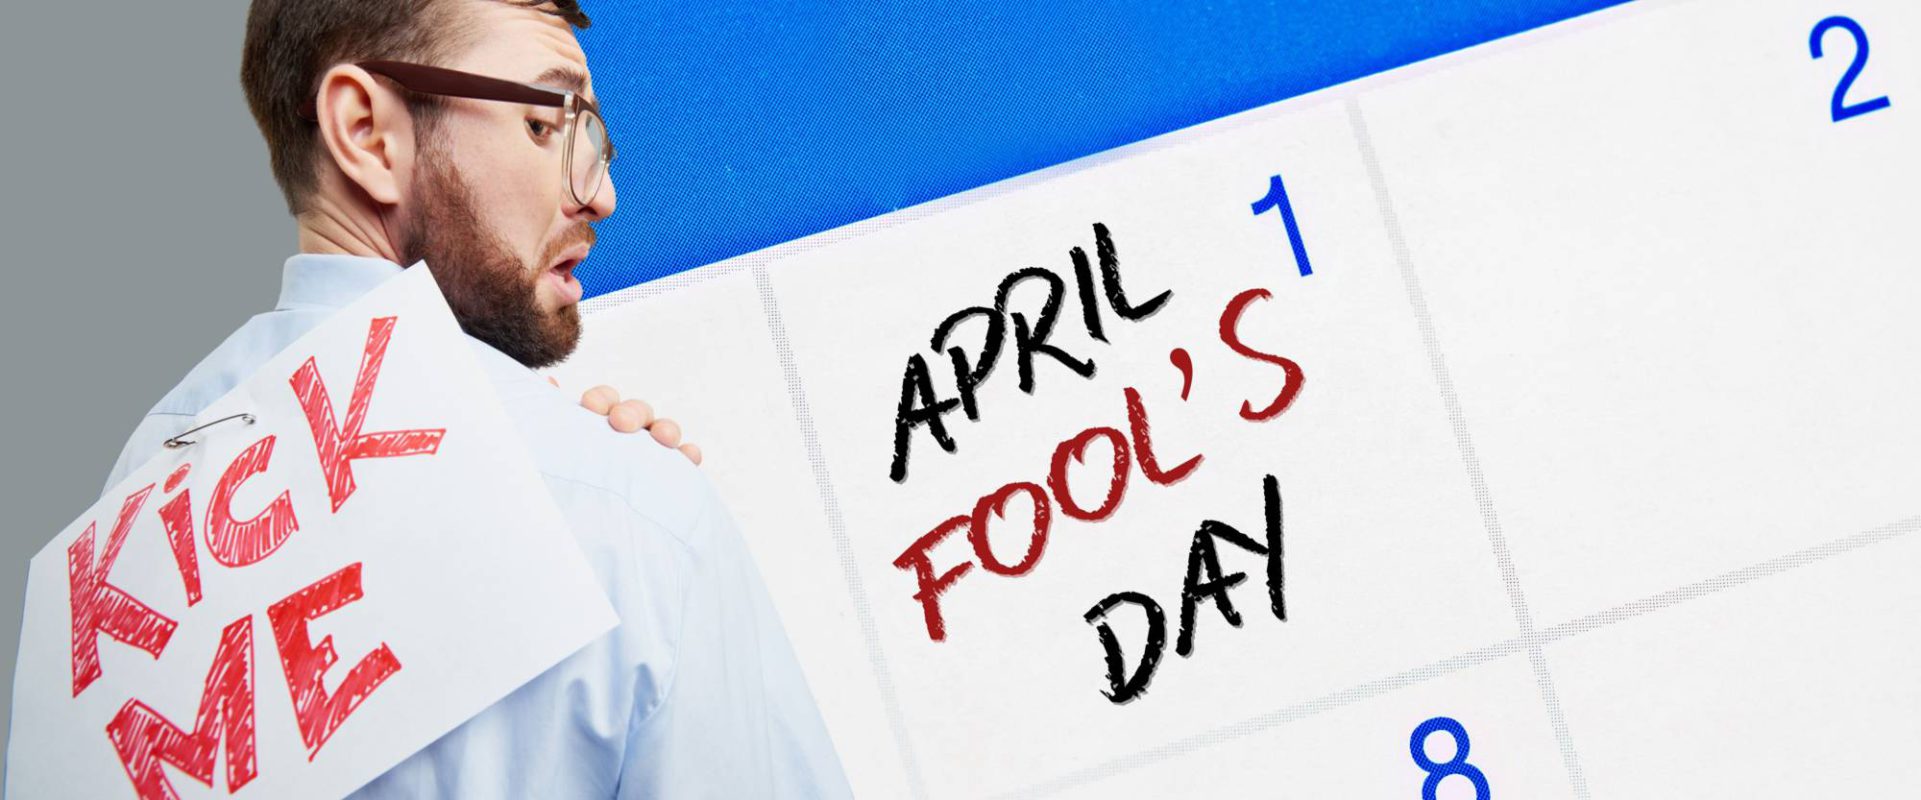 Ups, April Fools’ Day! Awas Kena Prank!